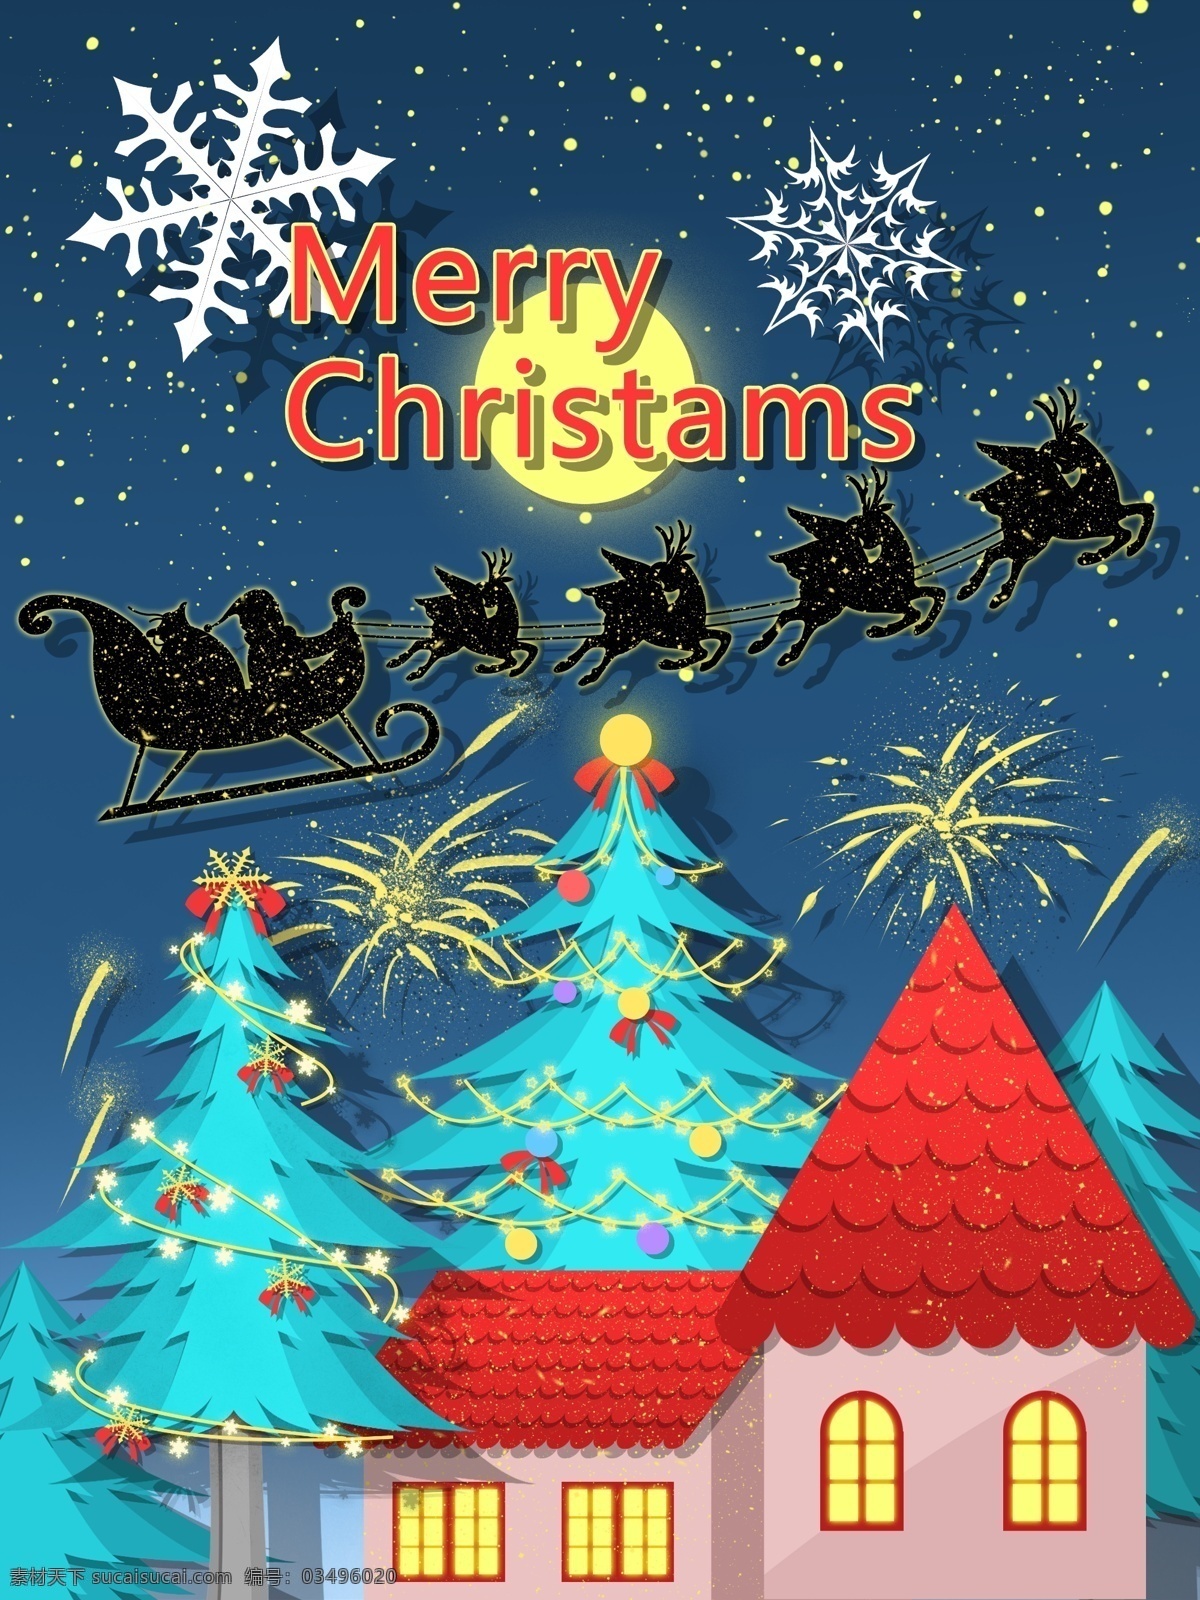 圣诞节 剪纸 风 插画 圣诞老人 坐 雪橇 飞过 屋顶 圣诞树 星空 房子 壁纸 圣诞快乐 松树 剪纸风 背景 日签